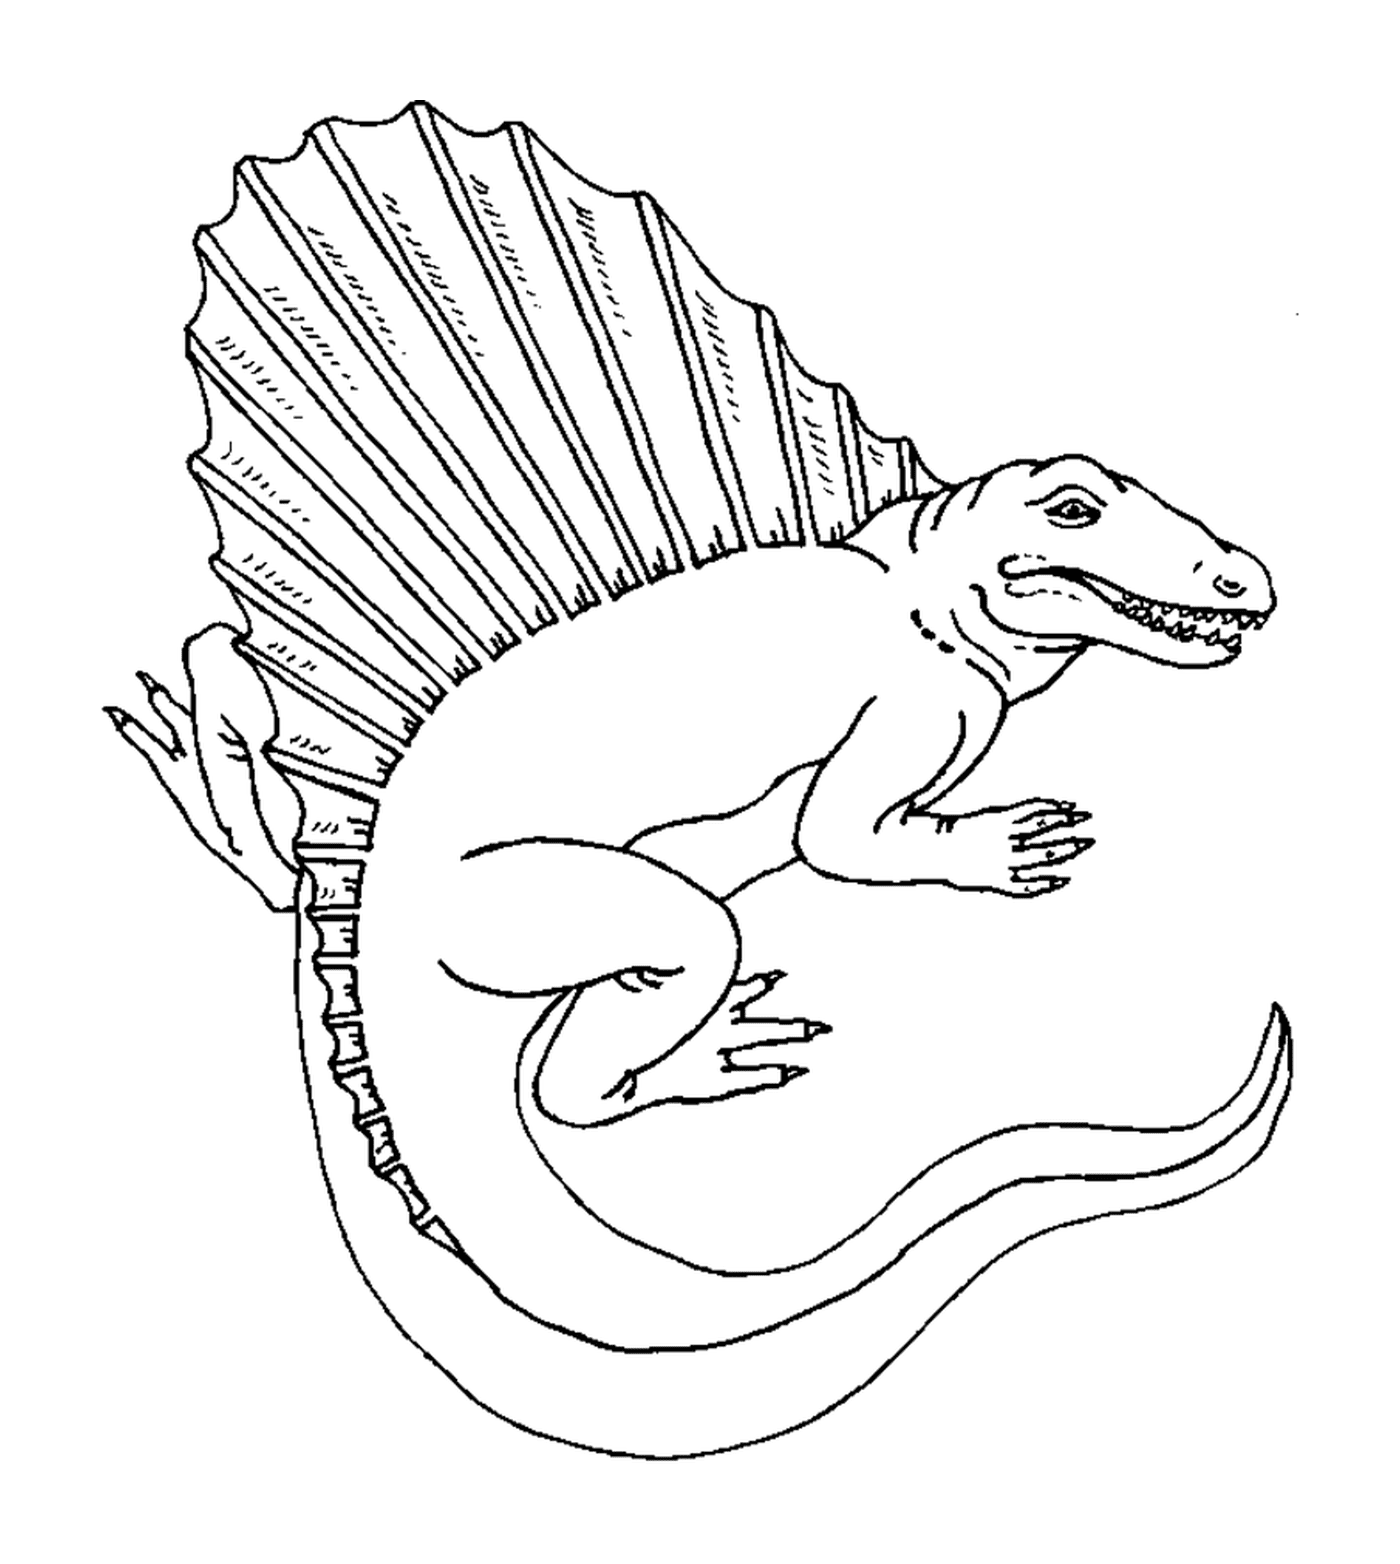  Dibujo de un dinosaurio preciso y realista 